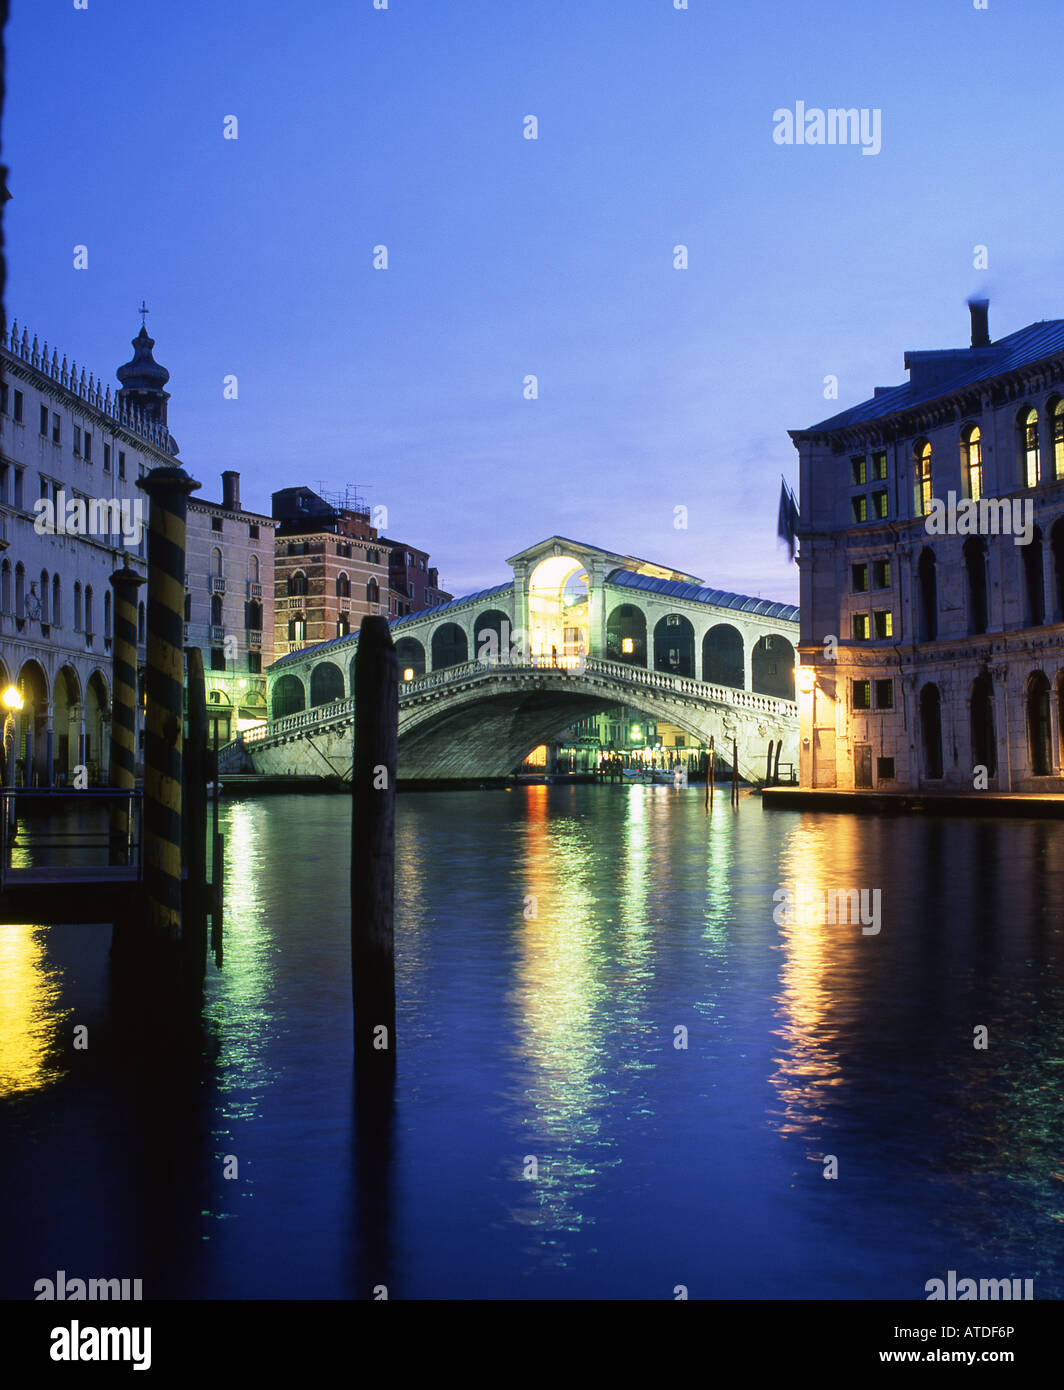 Rialto Bridge and Grand Canal at twilight / night Venice Veneto Italy Stock Photo